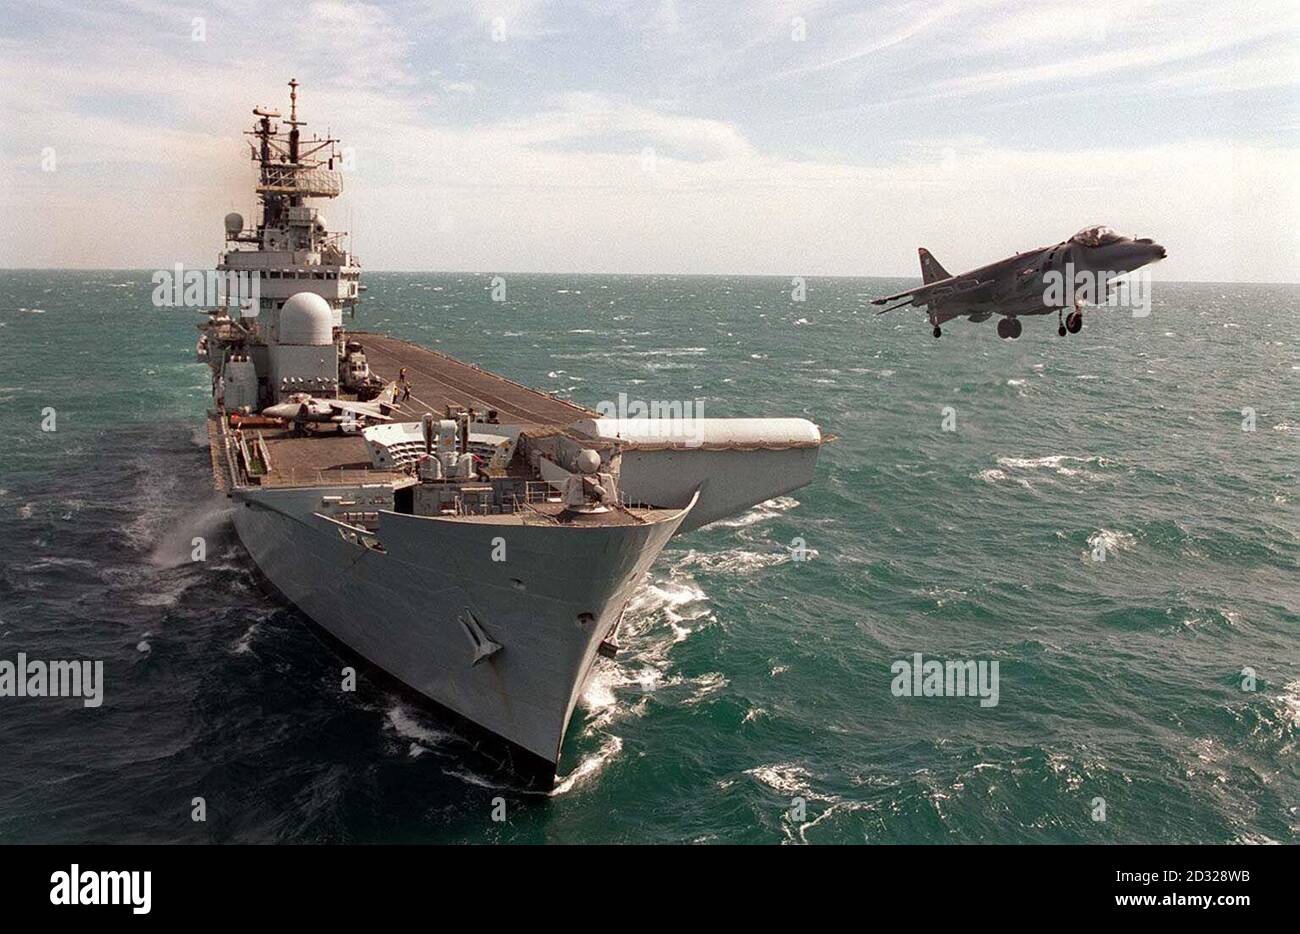 Der Flugzeugträger HMS Illustrious, der derzeit im Rahmen der Übung Saif Sareea II im Golf zum Einsatz kommt Es wird erwartet, dass die Regierung später bekannt geben wird, dass das Schiff in der Gegend bleiben wird, um als Basis zu fungieren. * ... für Mitglieder der arktischen und bergkriegsführenden Truppen der 3 Commando Brigade, die zusammen mit dem Hubschrauberträger HMS Ocean und dem Sturmschiff HMS Fearless in Afghanistan eingesetzt werden können. 27/07/04: Die Royal Navy wird an die Spitze einer der wichtigsten Waffen Großbritanniens im Krieg gegen den Terror zurückkehren. Der riesige Flugzeugträger HMS Illustrious wird an die RO übergeben Stockfoto